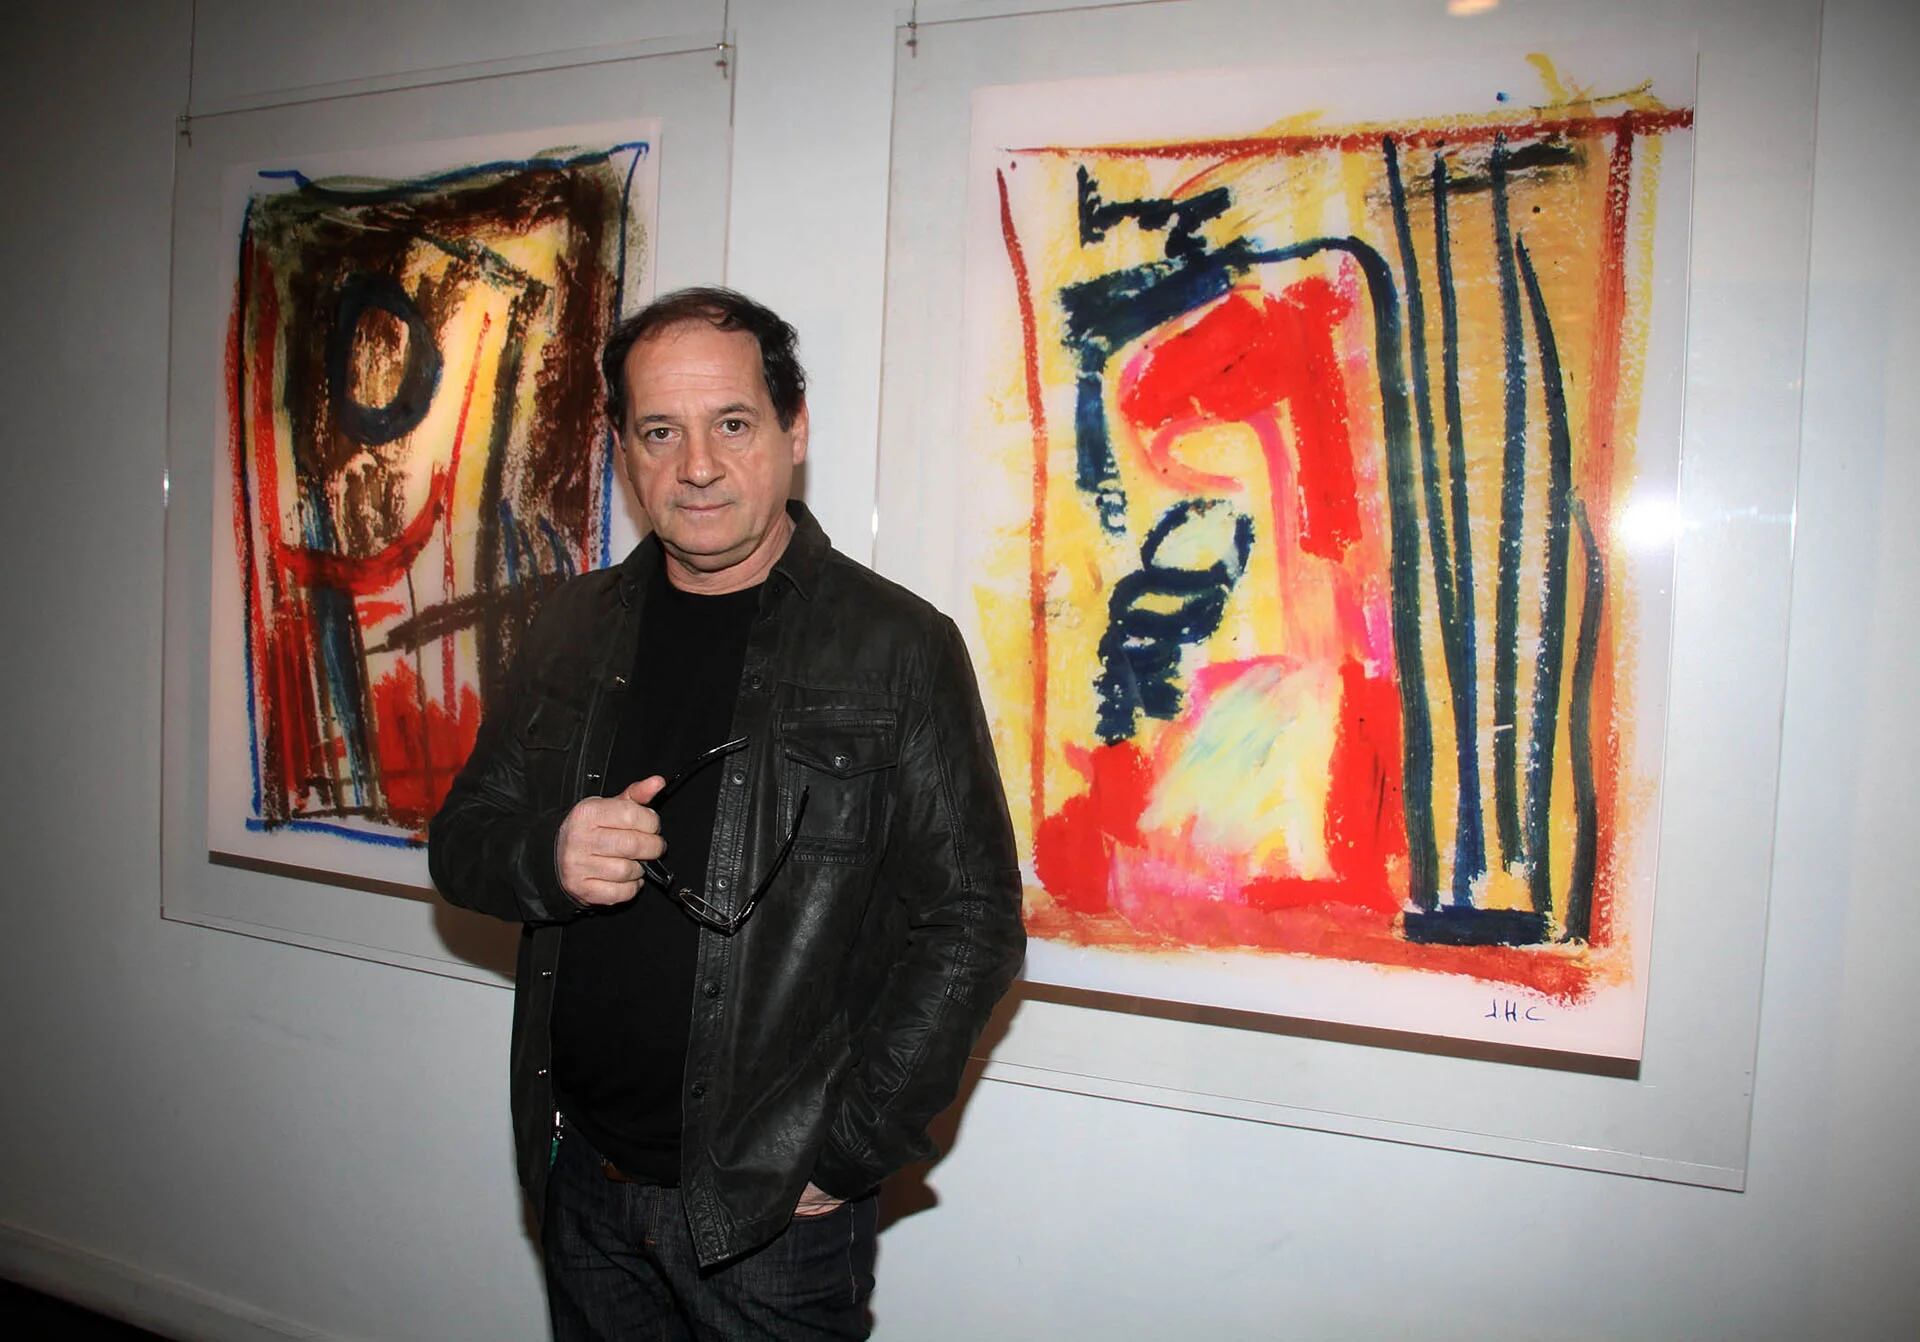 Acompañado por amigos, artistas y figuras del espectáculo, Julio Chávez presentó sus obras de arte realizadas en “Red”, la obra teatral en la que interpretó a Mark Rothko